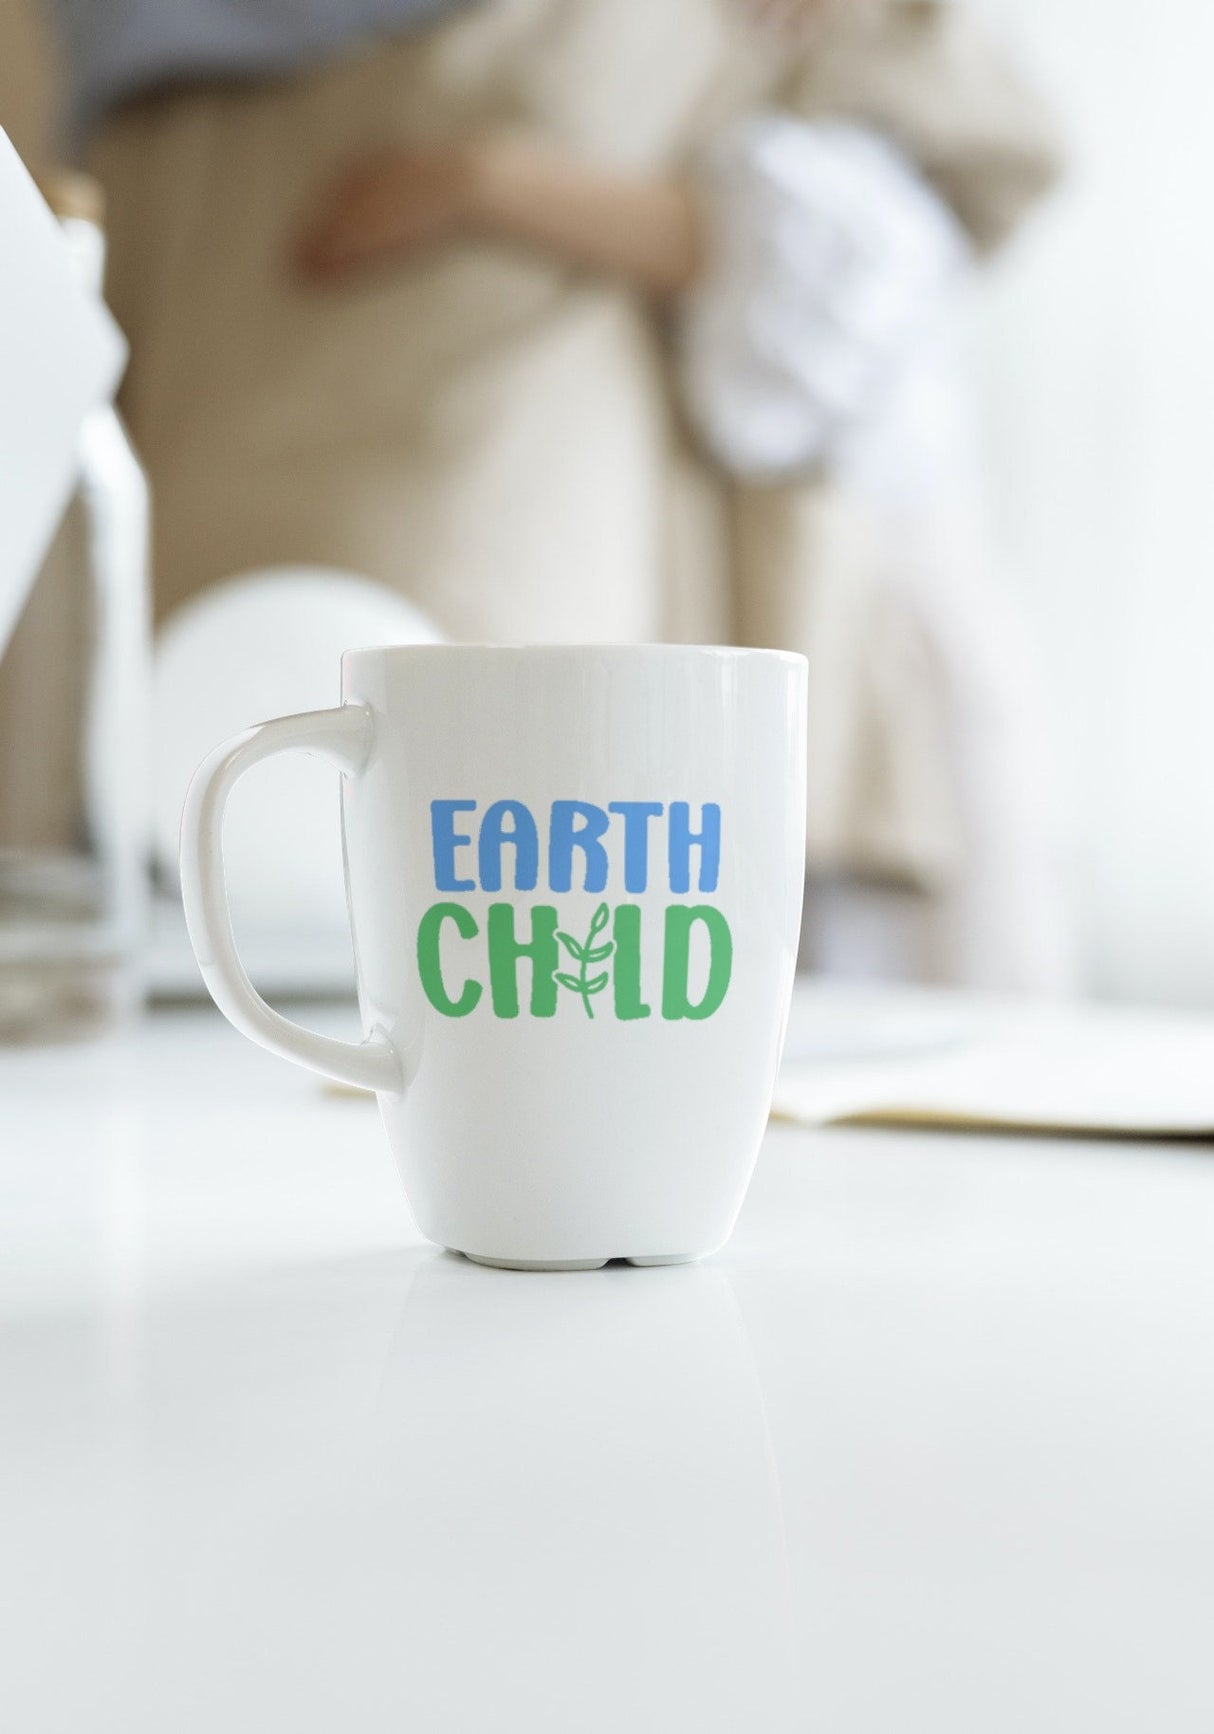 Earth Child SVG Cut File